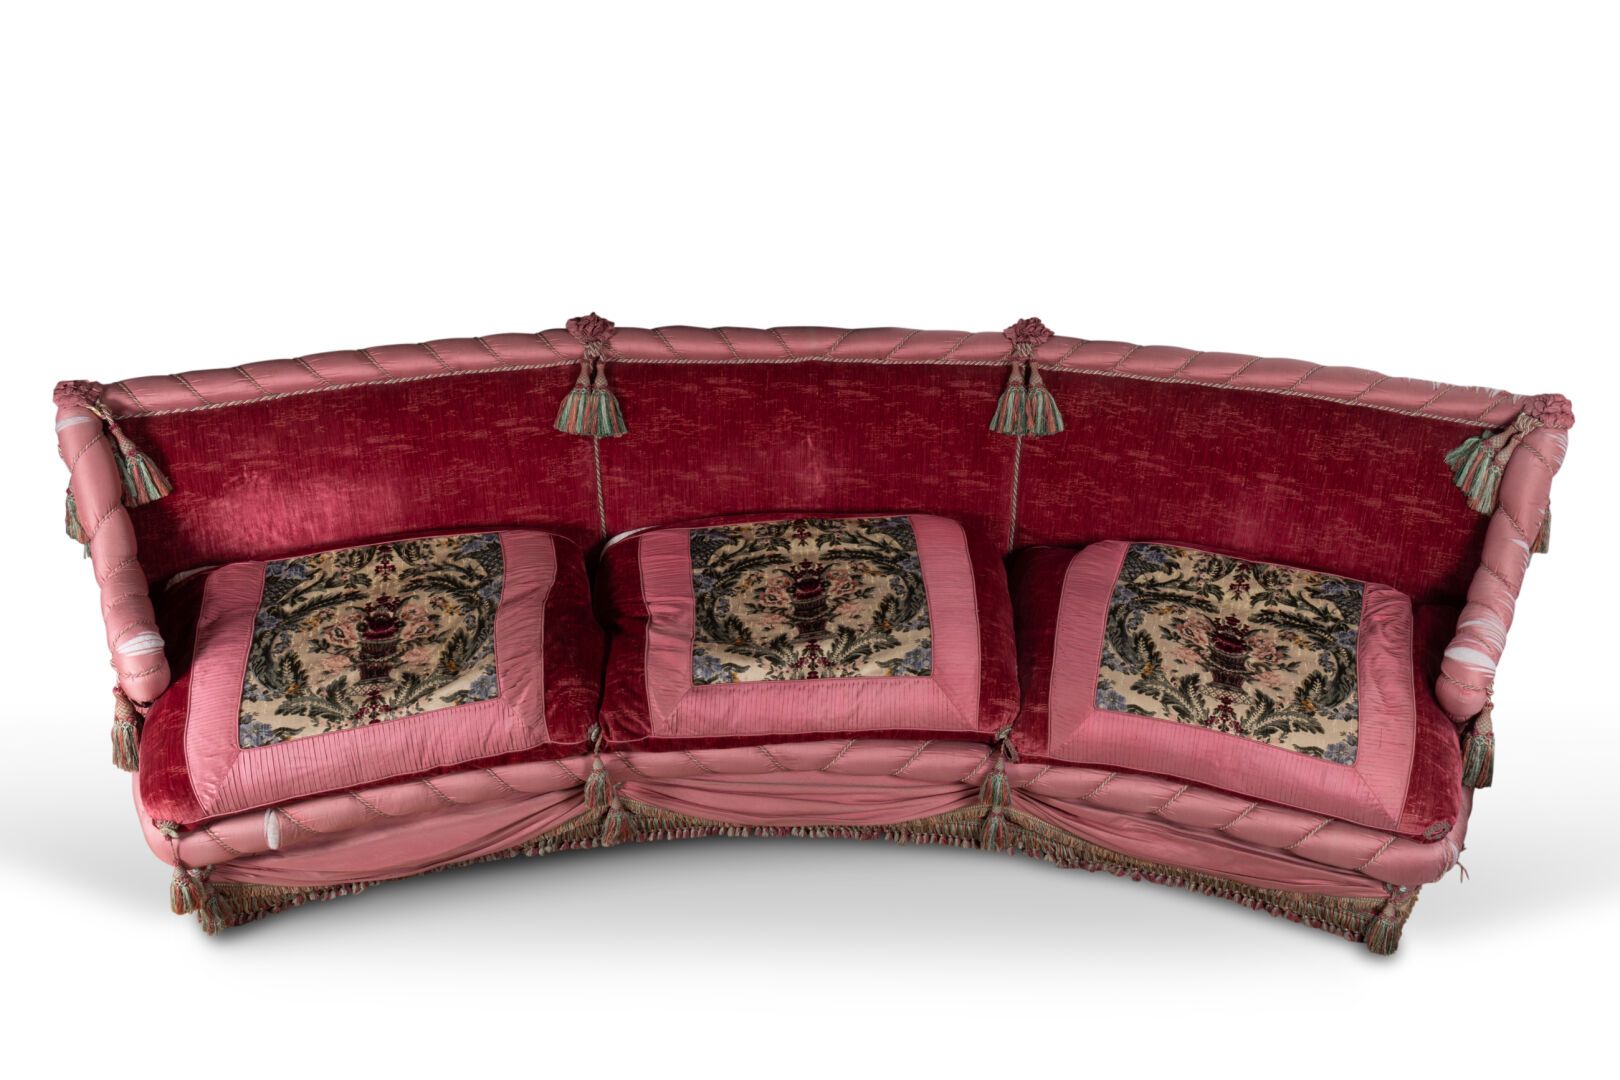 CANAPE Gran sofá de teatro de terciopelo rojo bordado 
Los reposabrazos y el res&hellip;